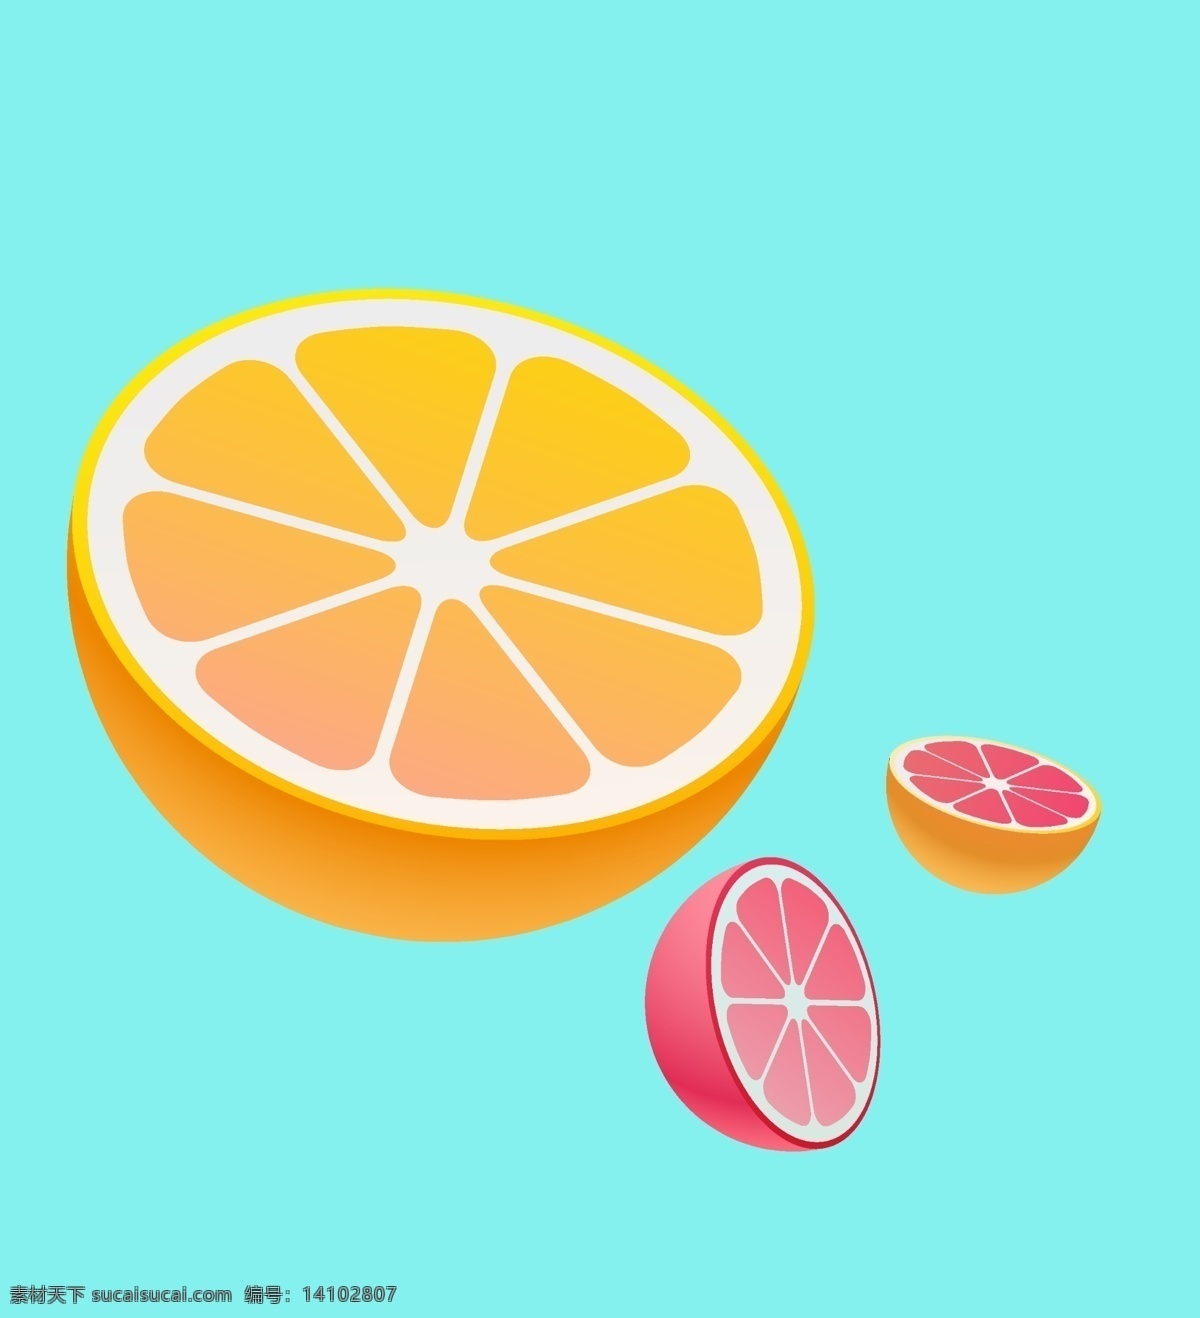 橙子图片 橙子 水果 橘子 热带水果 手绘